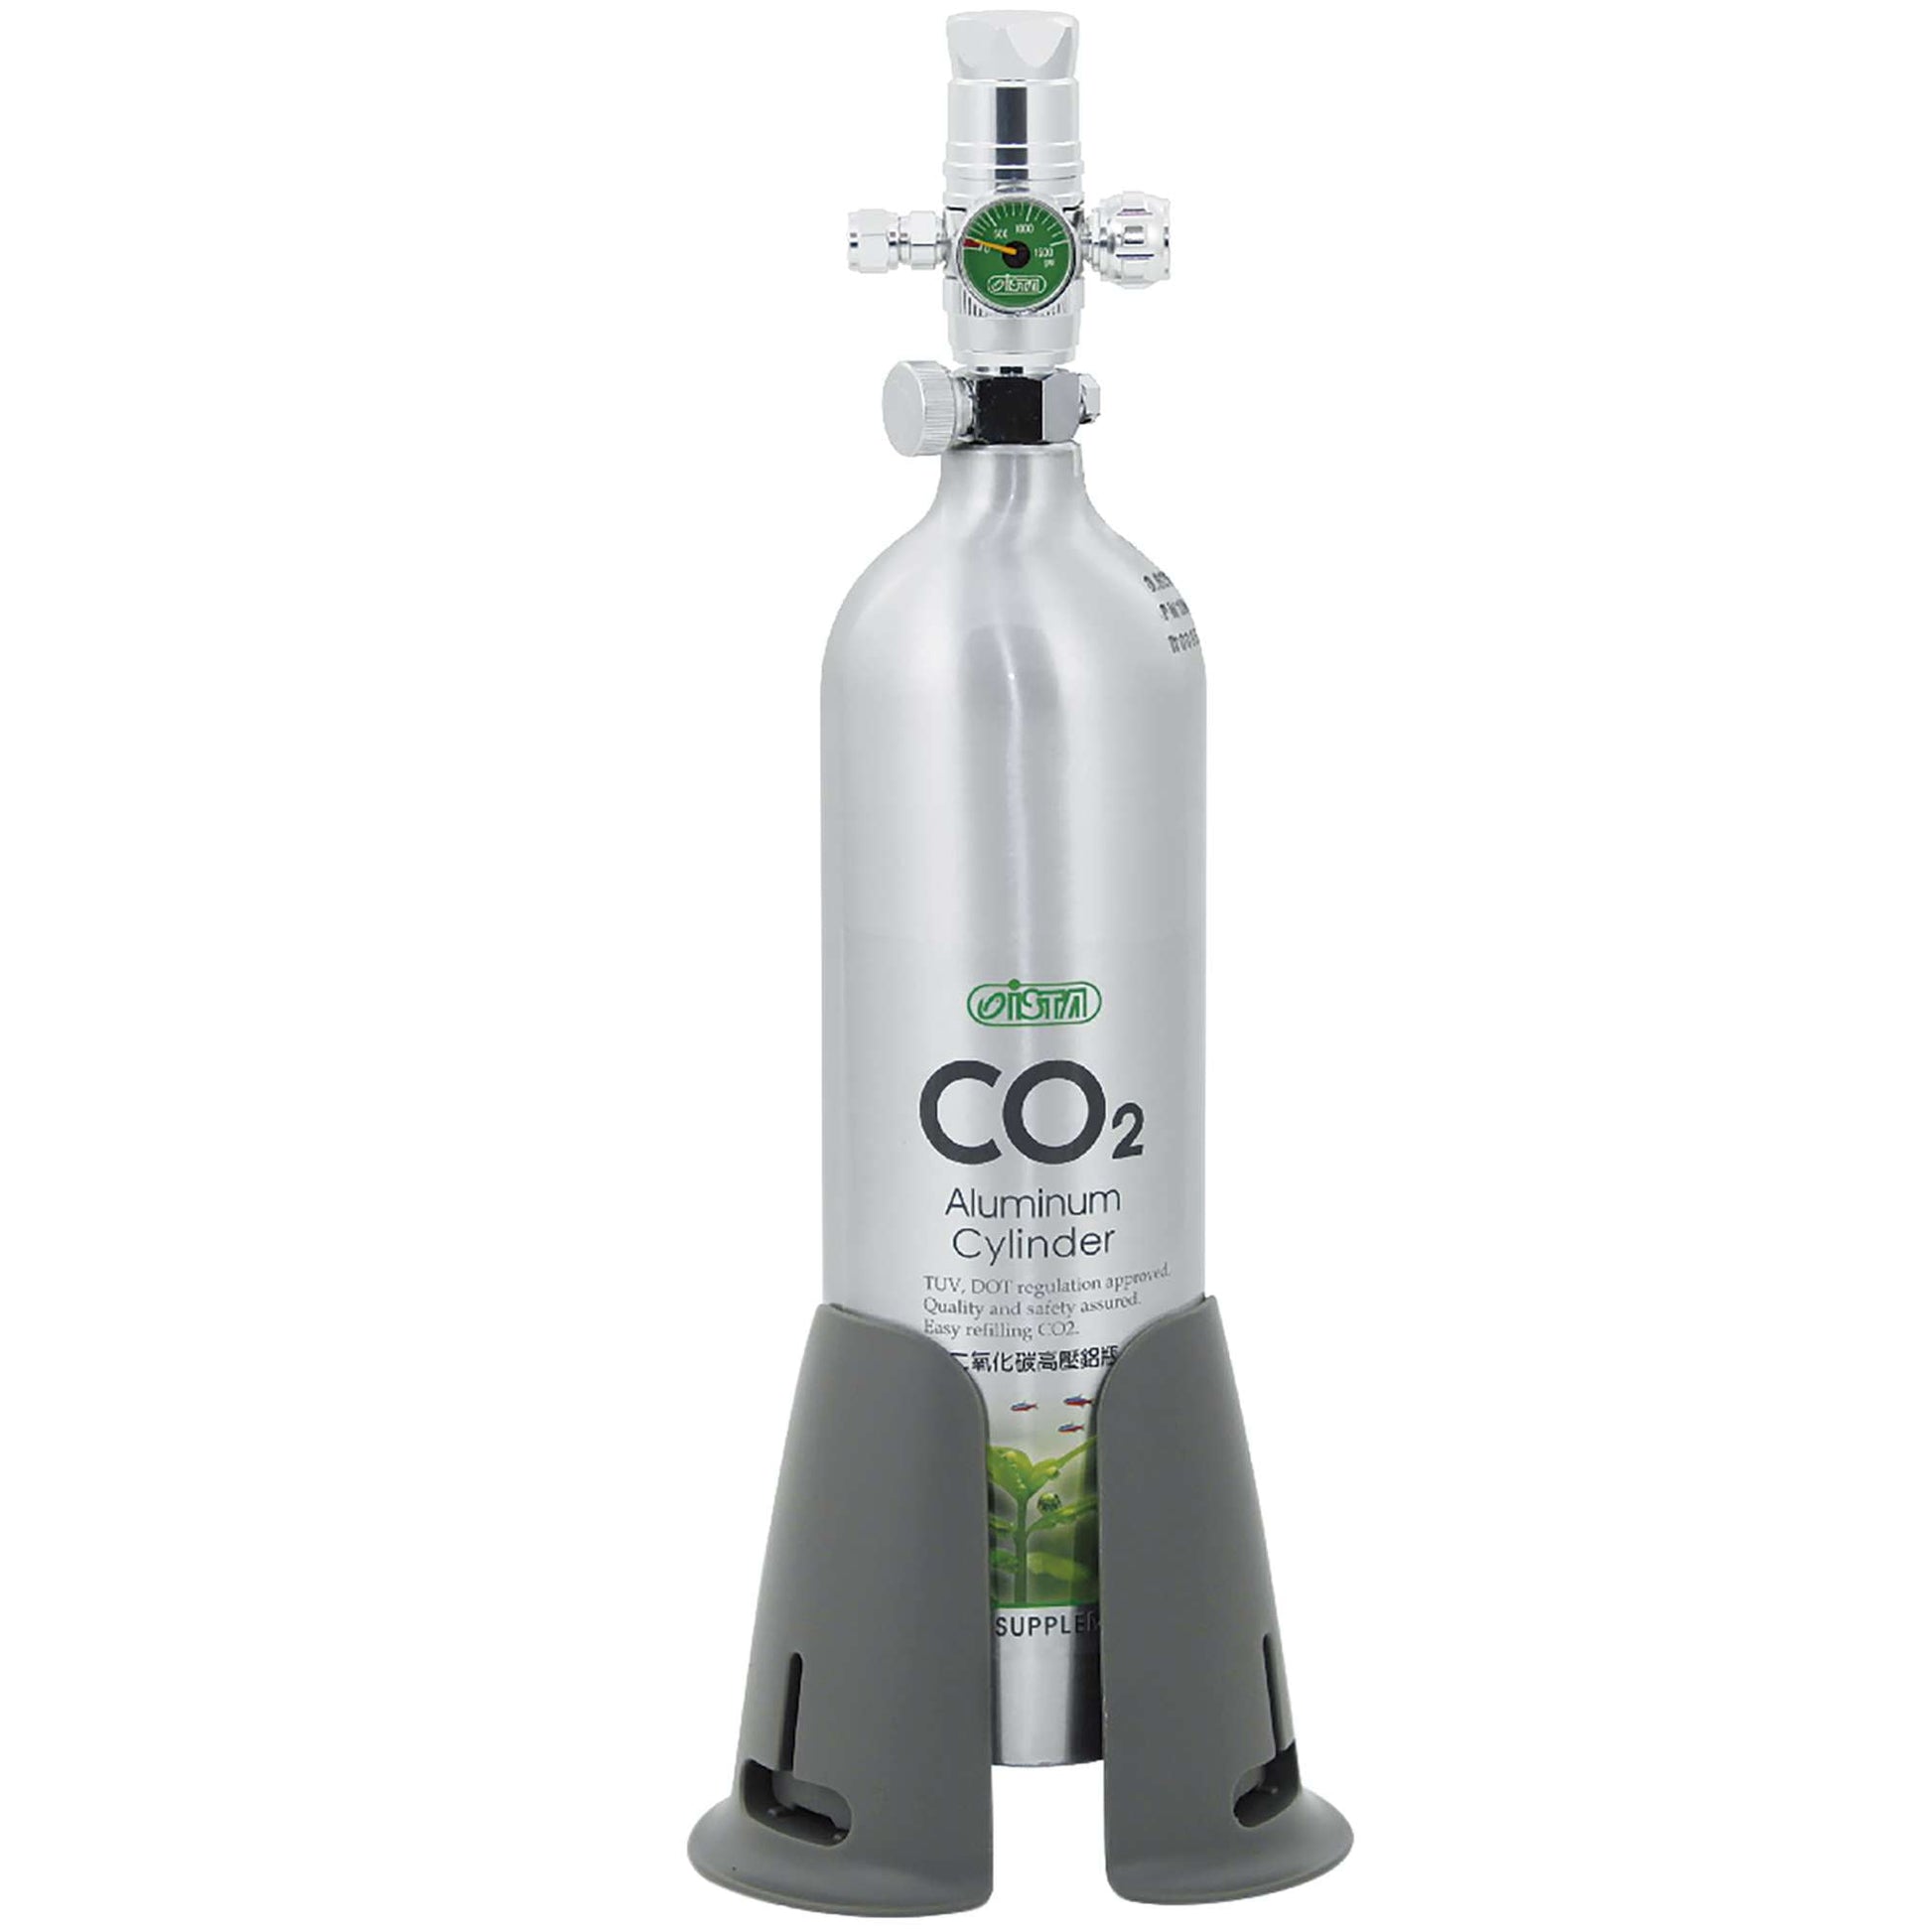 Kit de CO2 con cilindro de aluminio 1 Litro